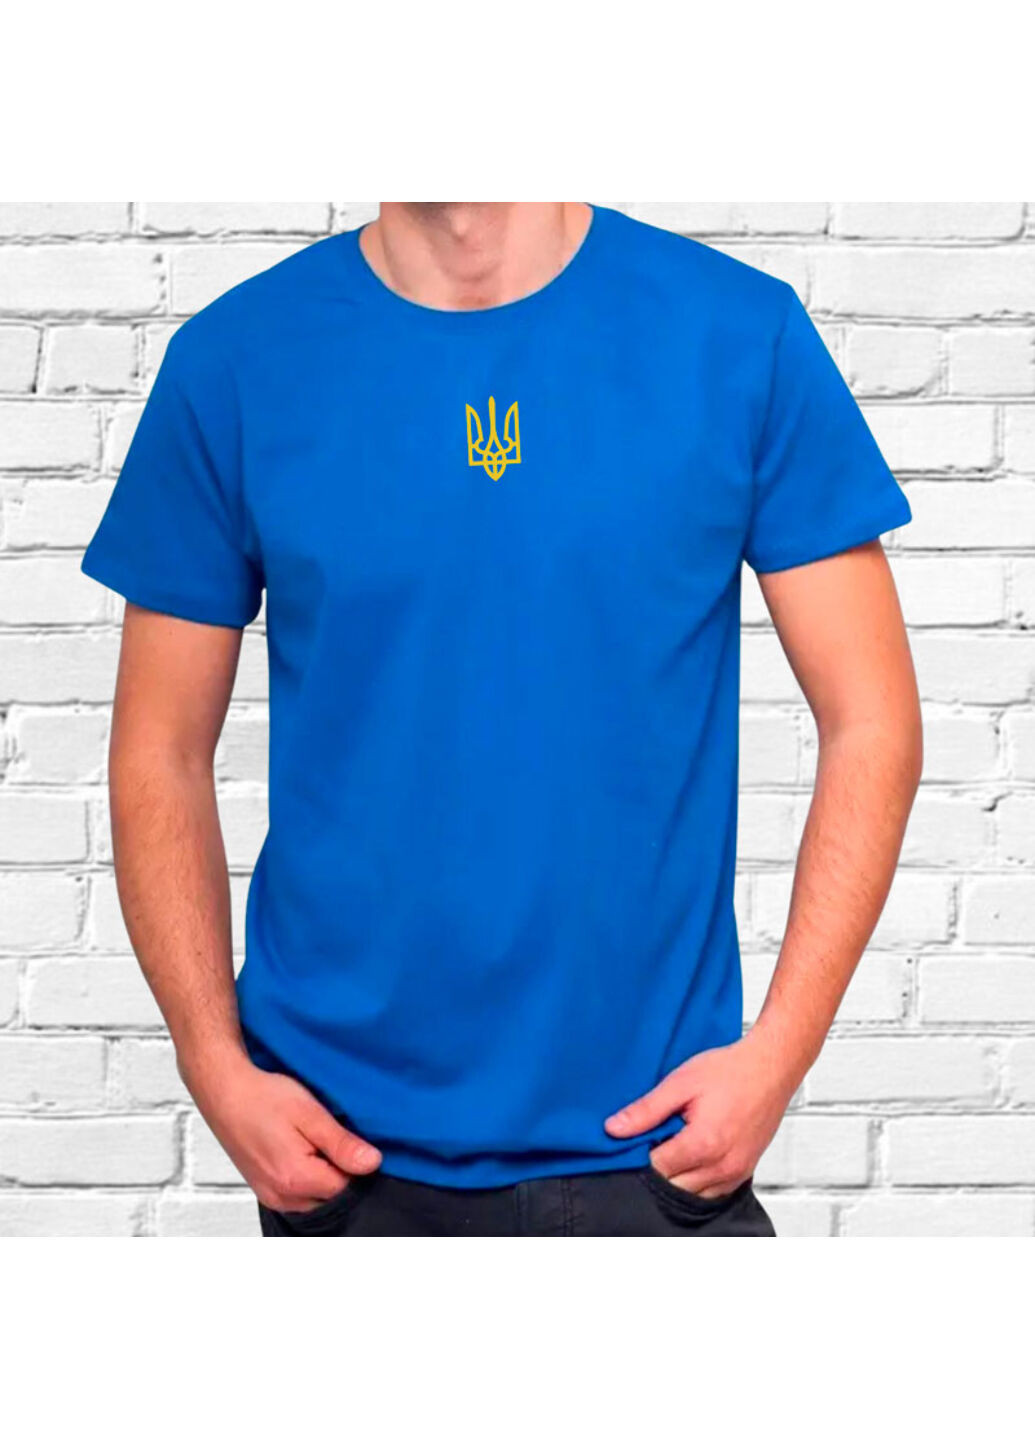 Синяя футболка з вишивкою золотого тризуба мужская синий xl No Brand